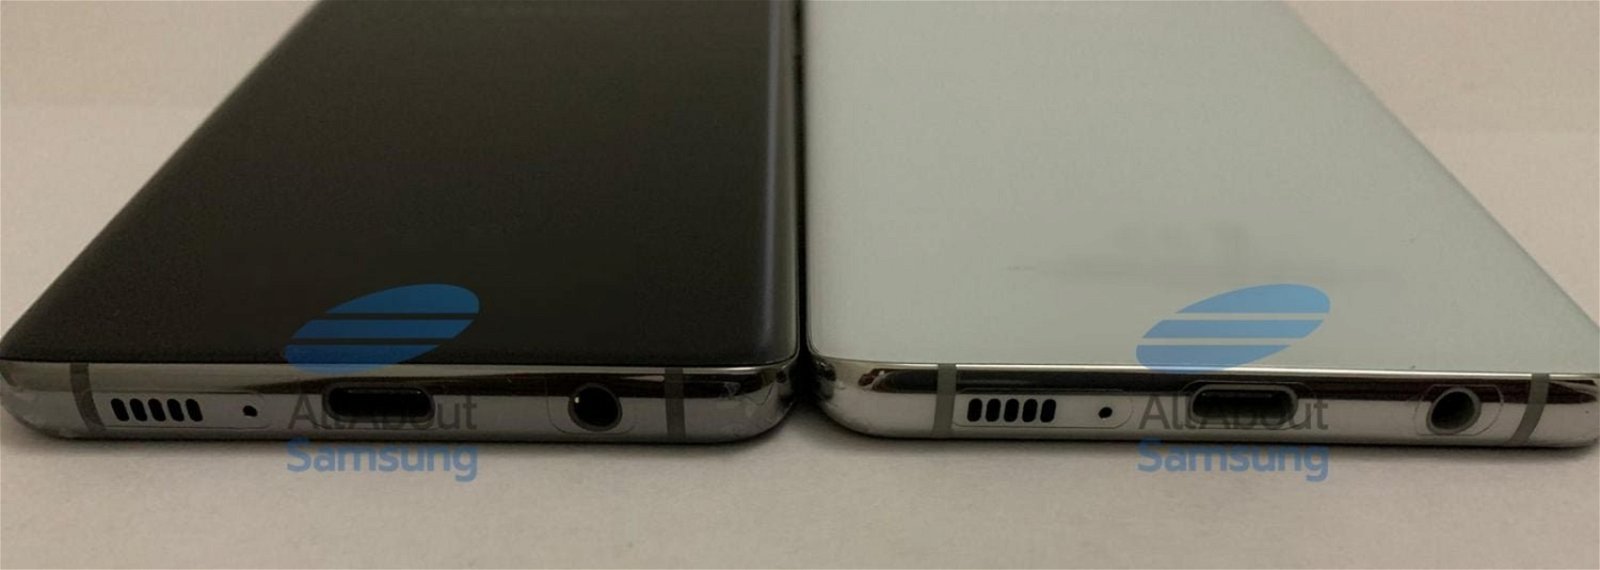 Samsung Galaxy S10 y S10 Plus, diseño parte inferior